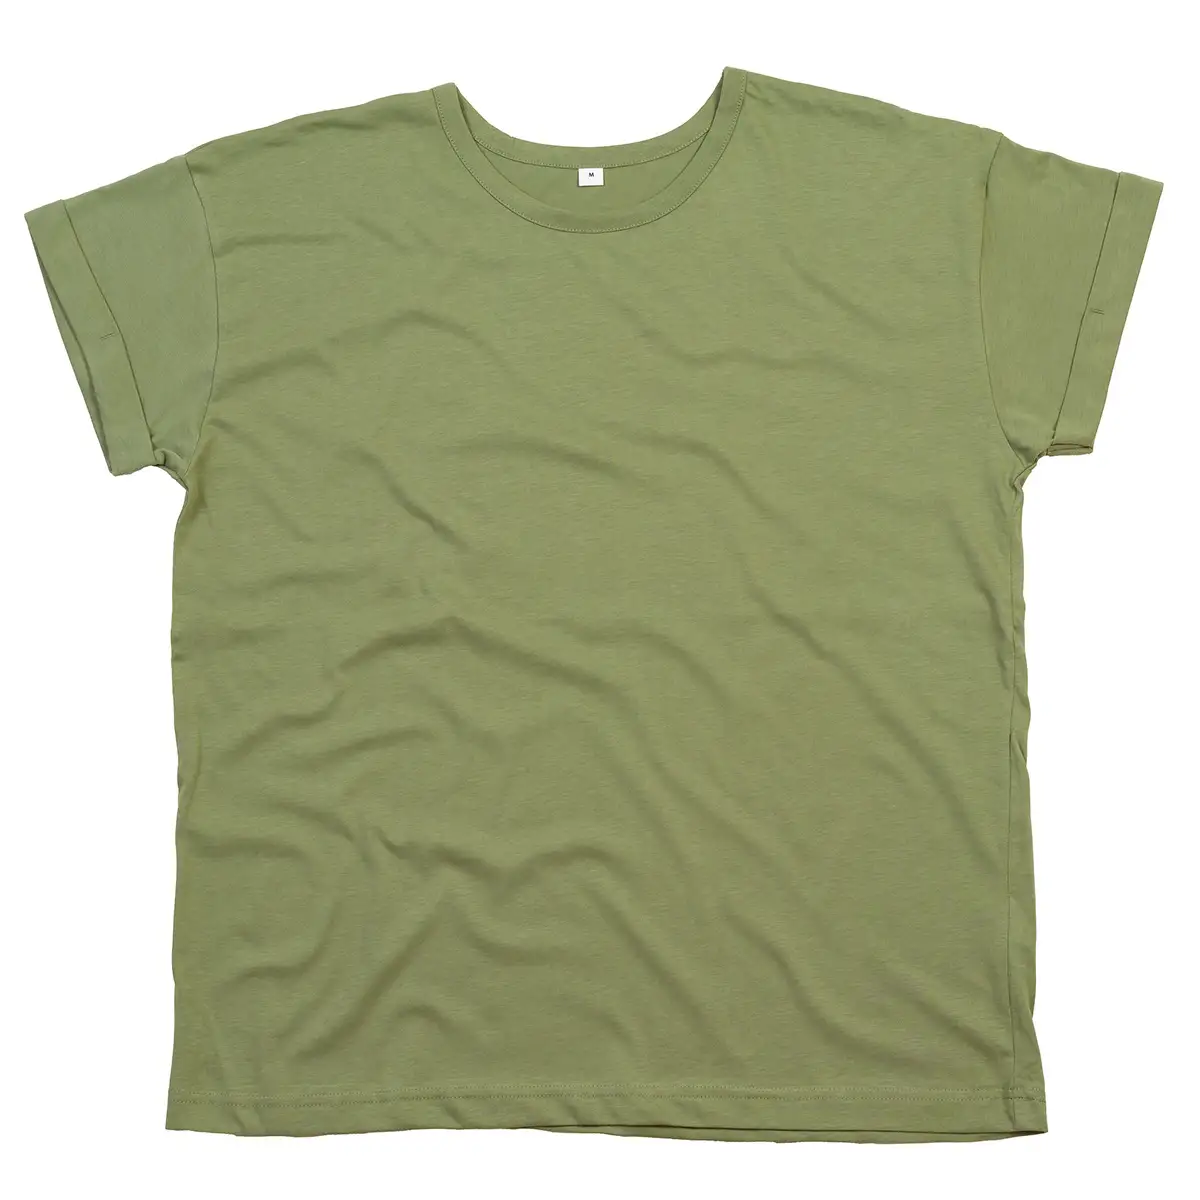 T-Shirt Donna Manica Corta Risvolto Cotone Personalizzata - Mantis